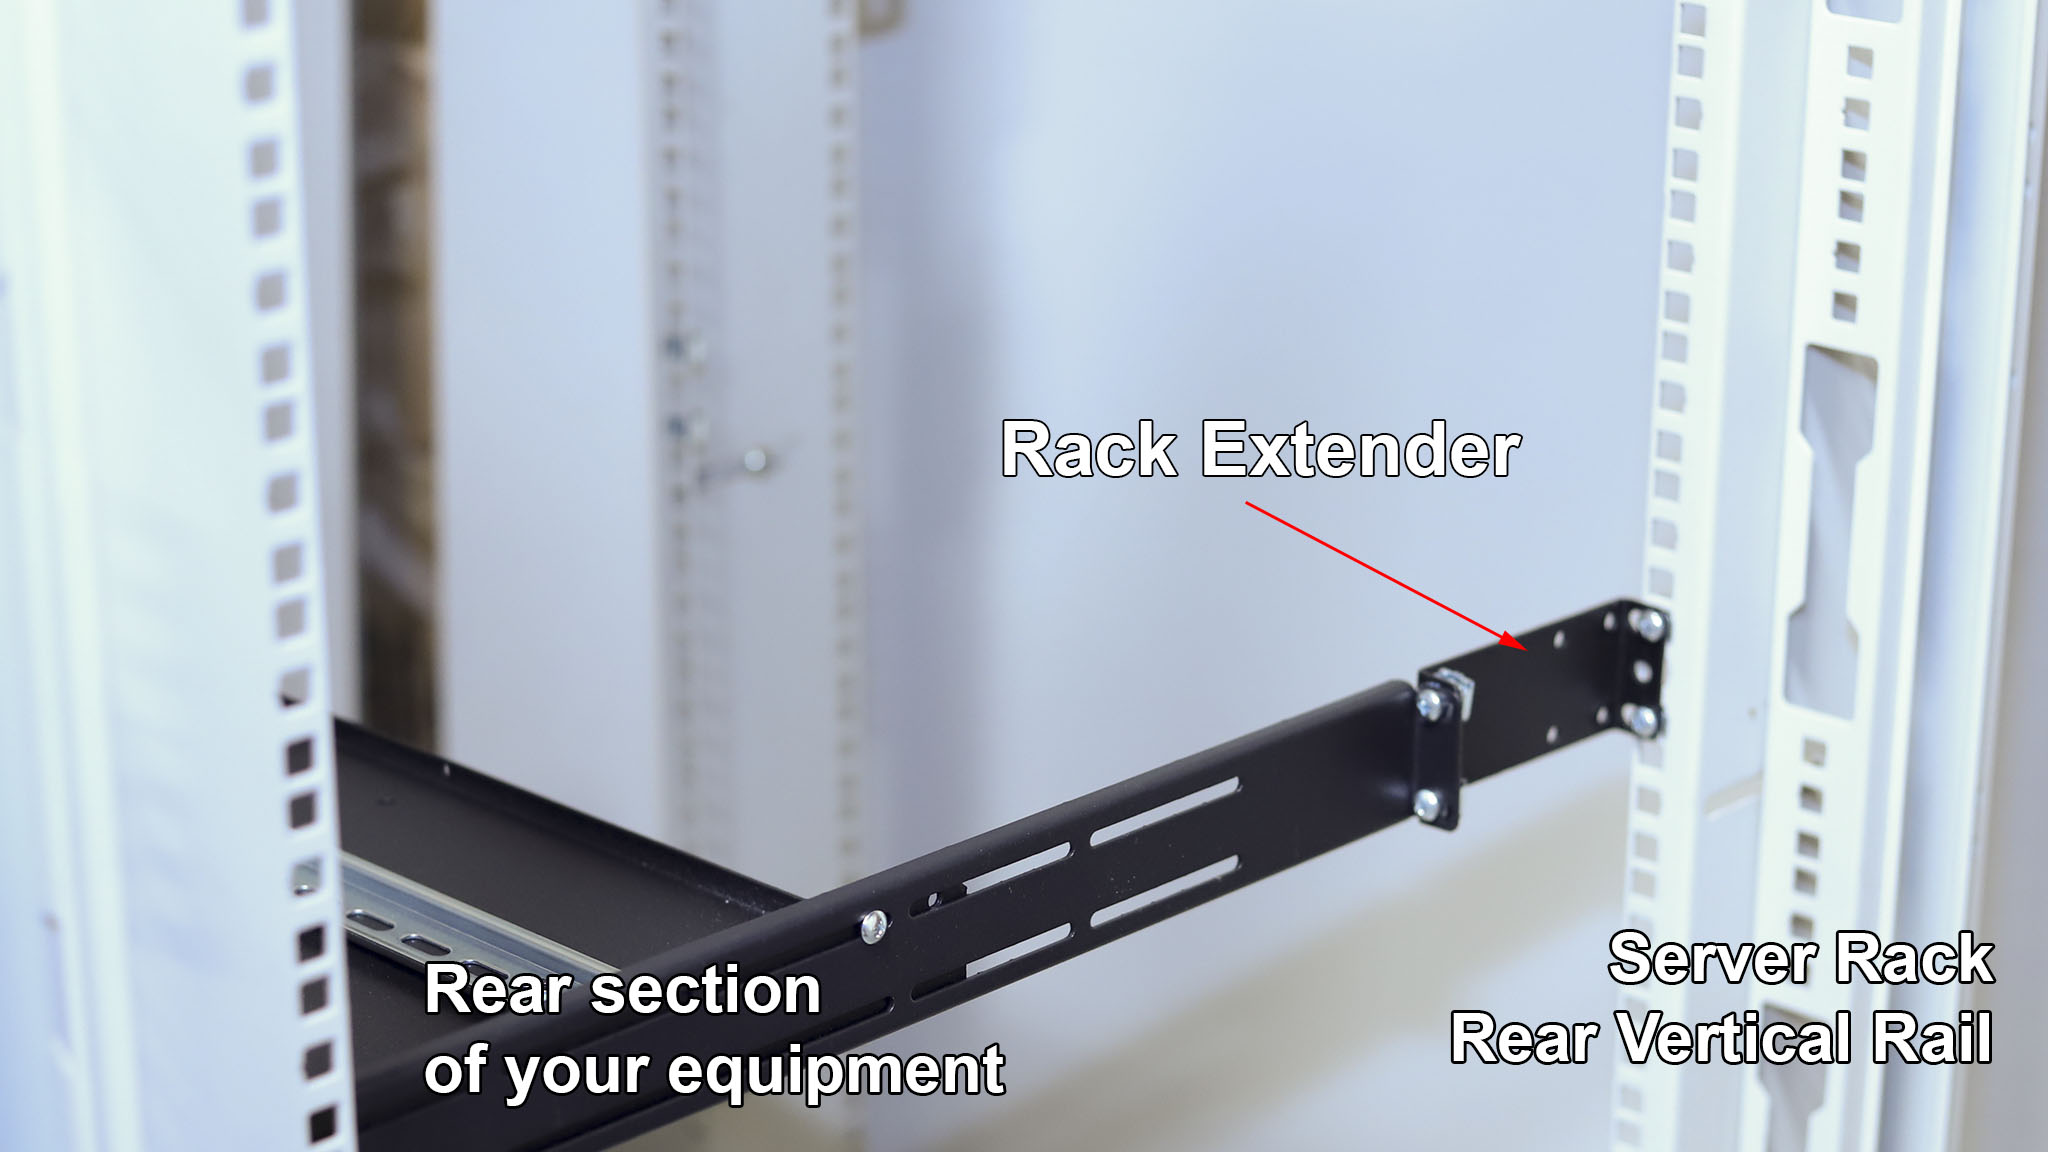 What is IAB102V10-1U rack extender